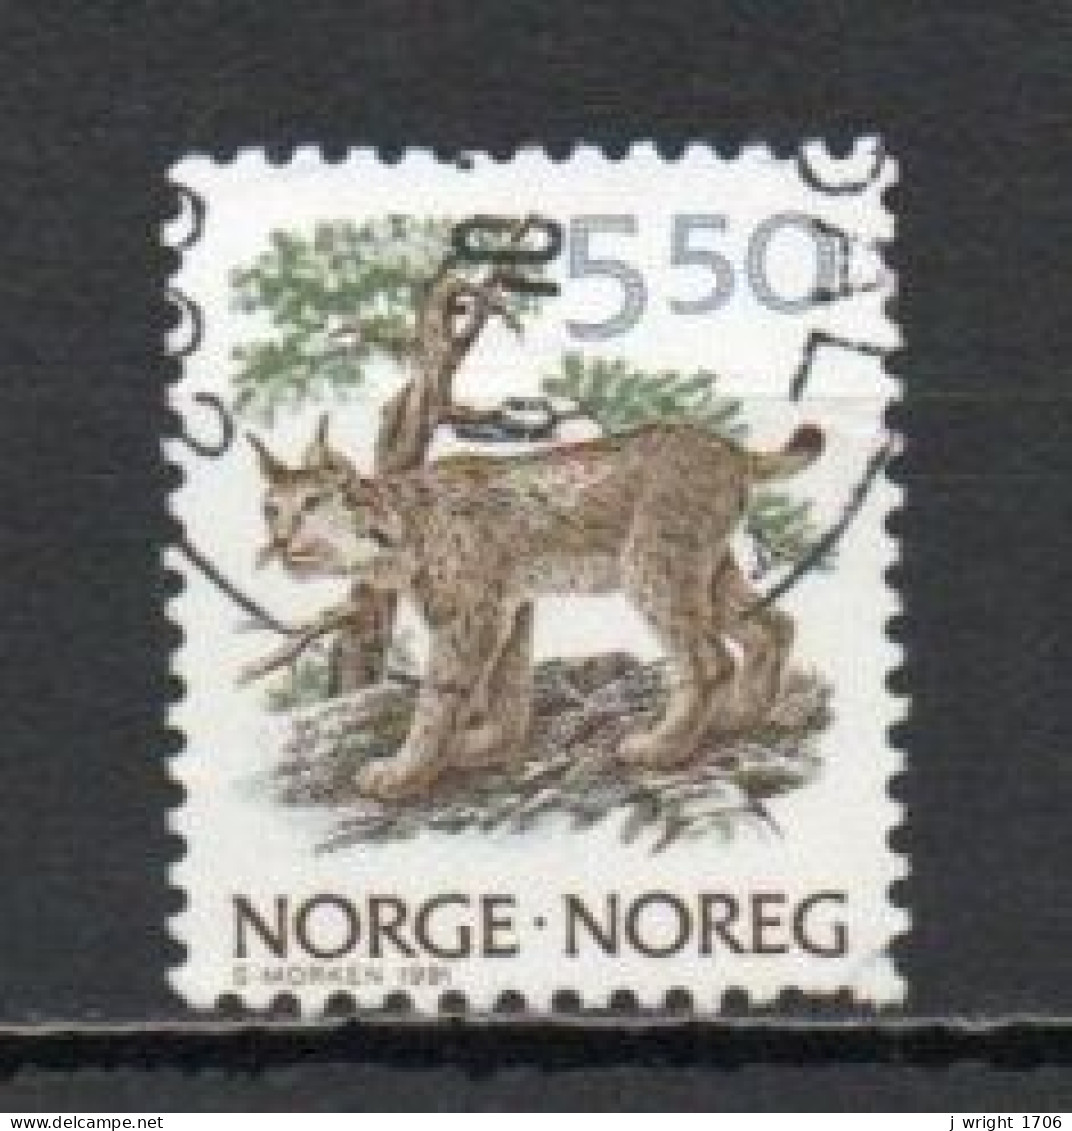 Norway, 1991, Wildlife/Lynx, 5.50Kr, USED - Oblitérés